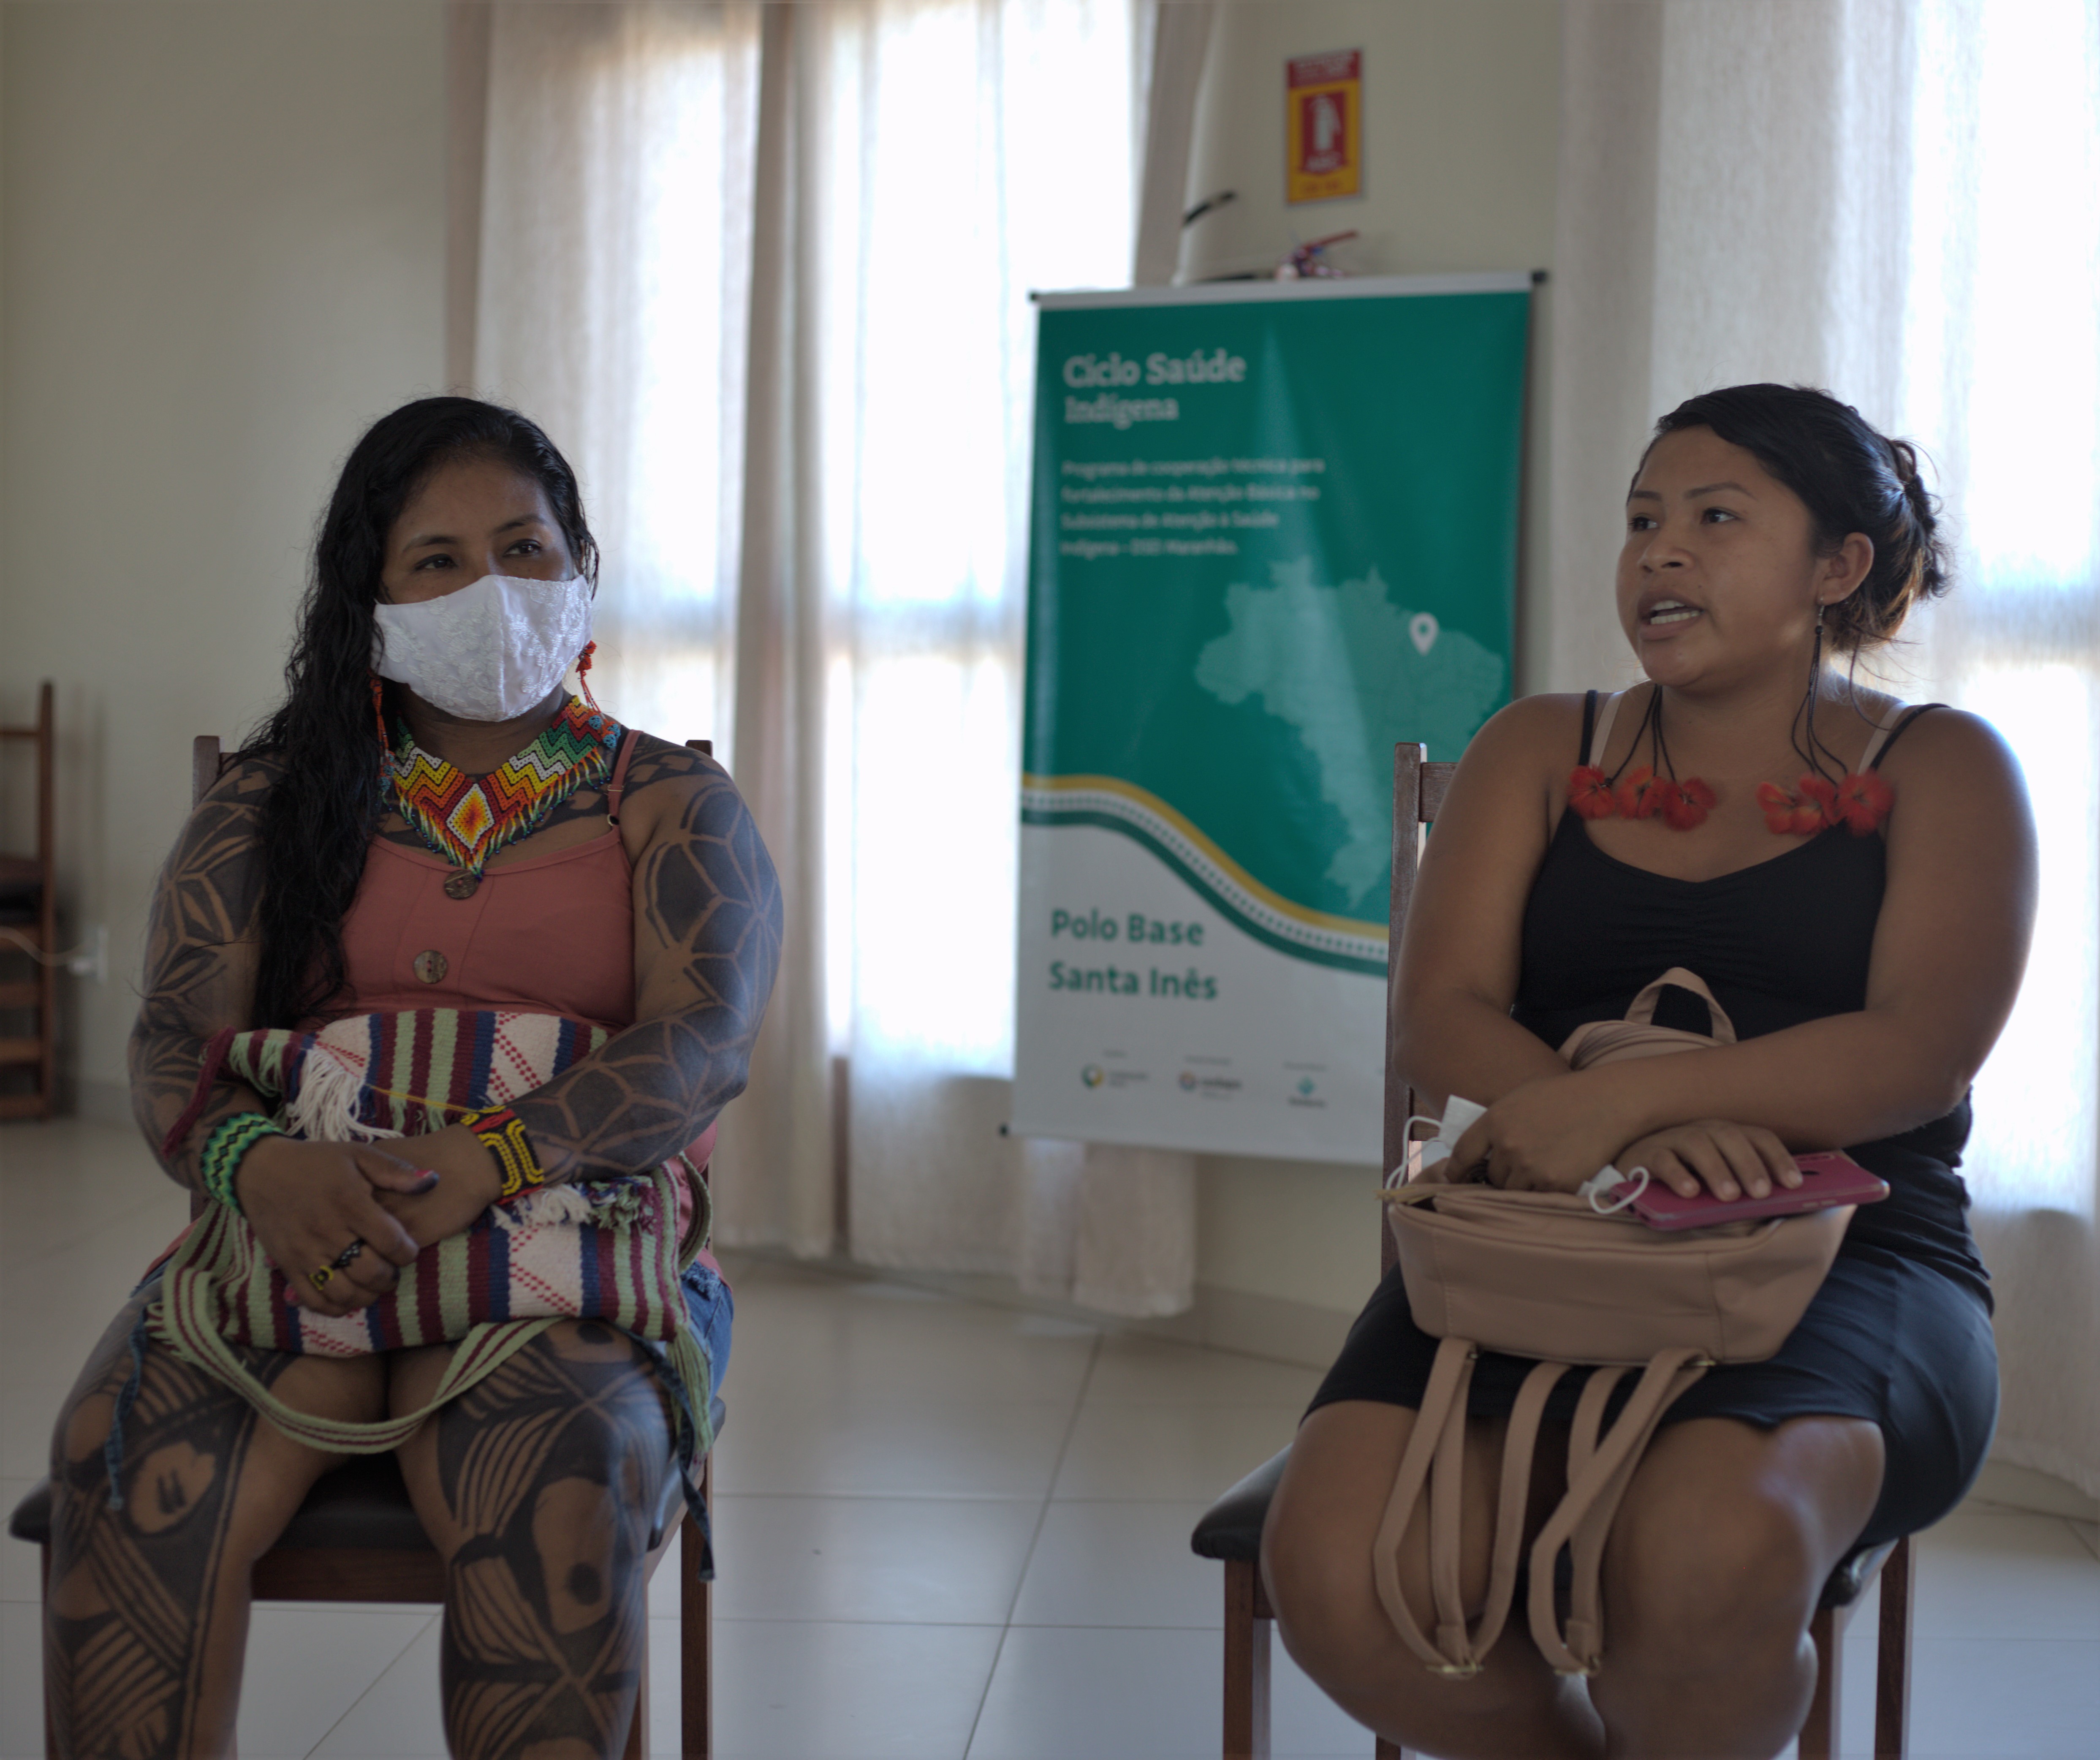 Imagem de duas mulheres indígenas sentadas em uma sala. Atrás delas é possível ver um cartas sobre o Ciclo de Saúde Indígena